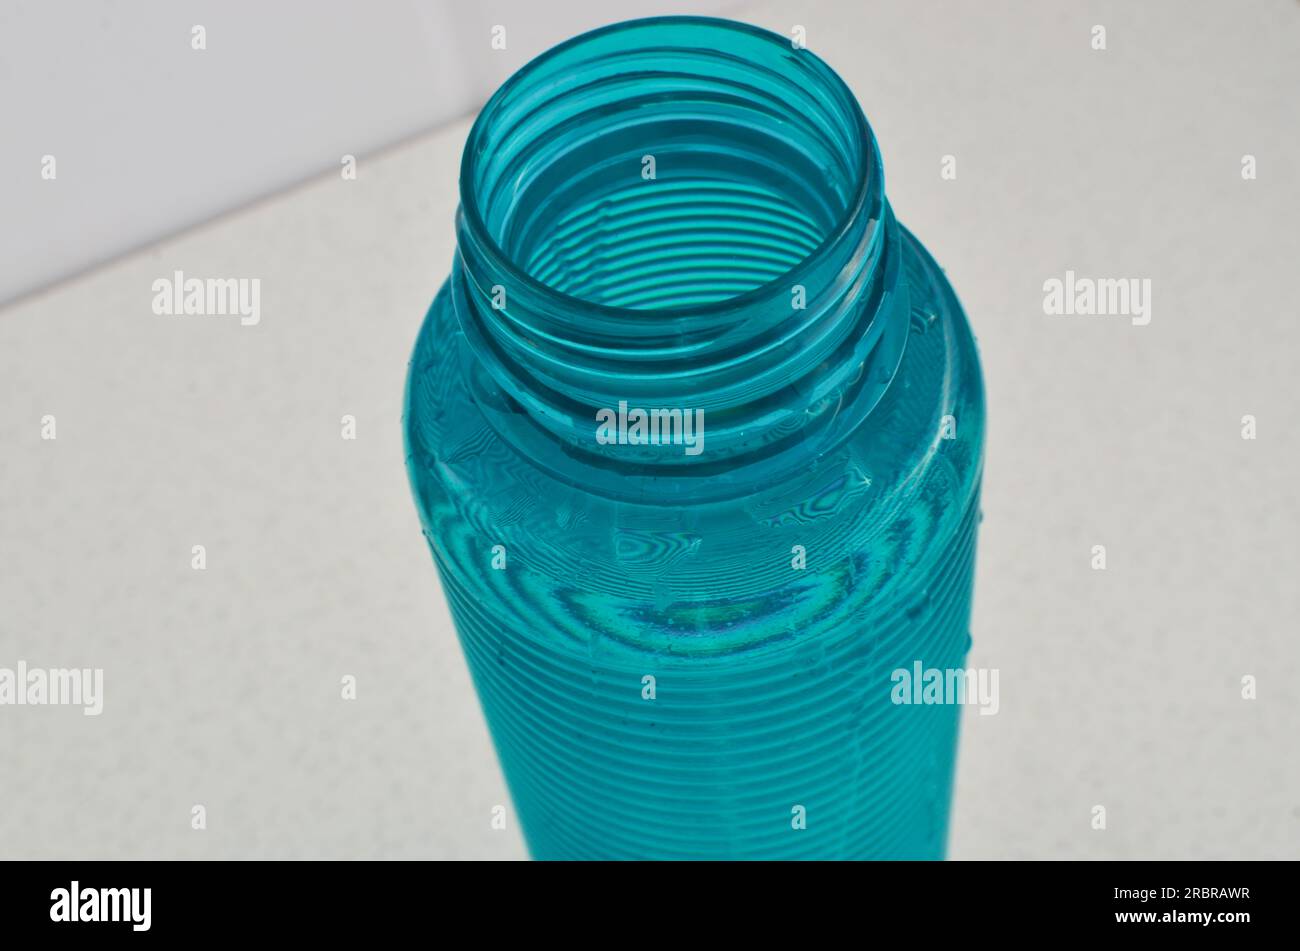 Detalle de una botella de agua azul, el compañero perfecto para los deportistas que valoran una hidratación adecuada. Foto de stock